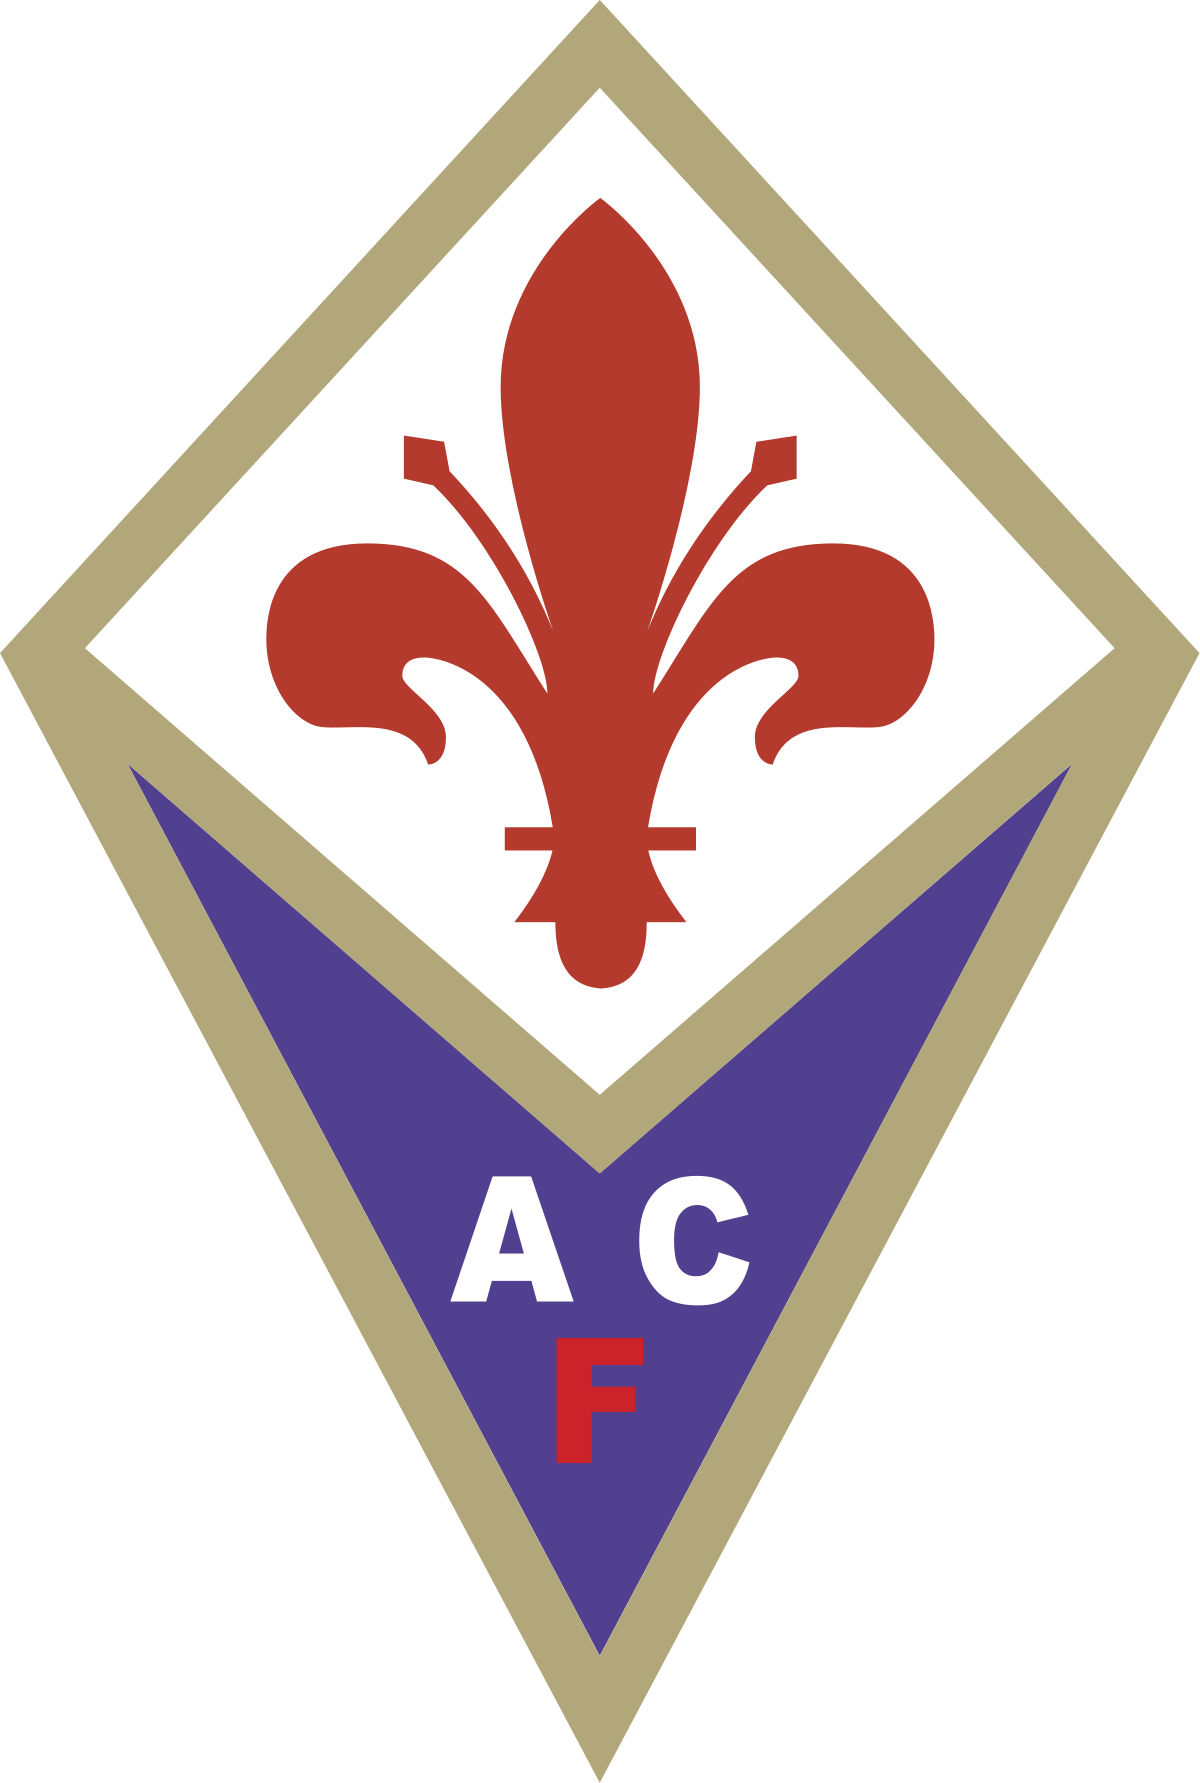 Logo of Fiorentina